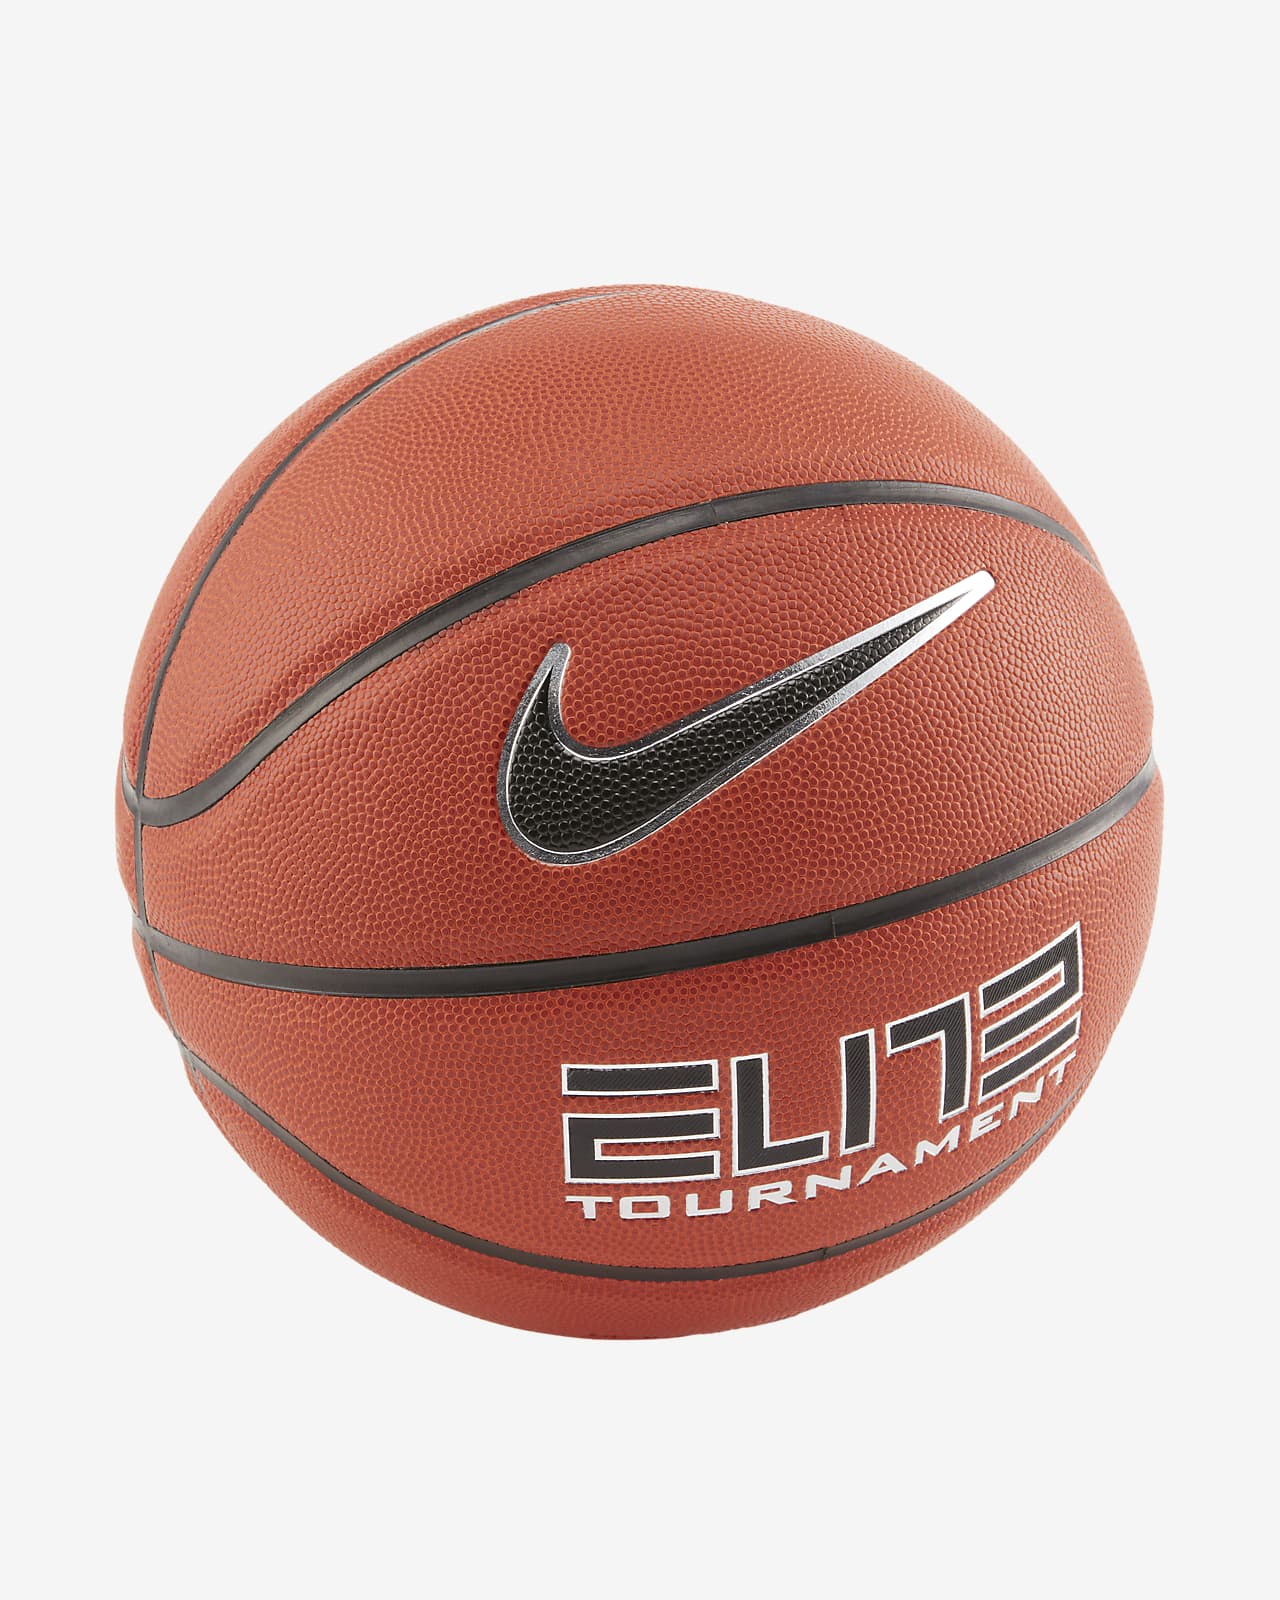 Nike Elite Tournament Basketball (Size 